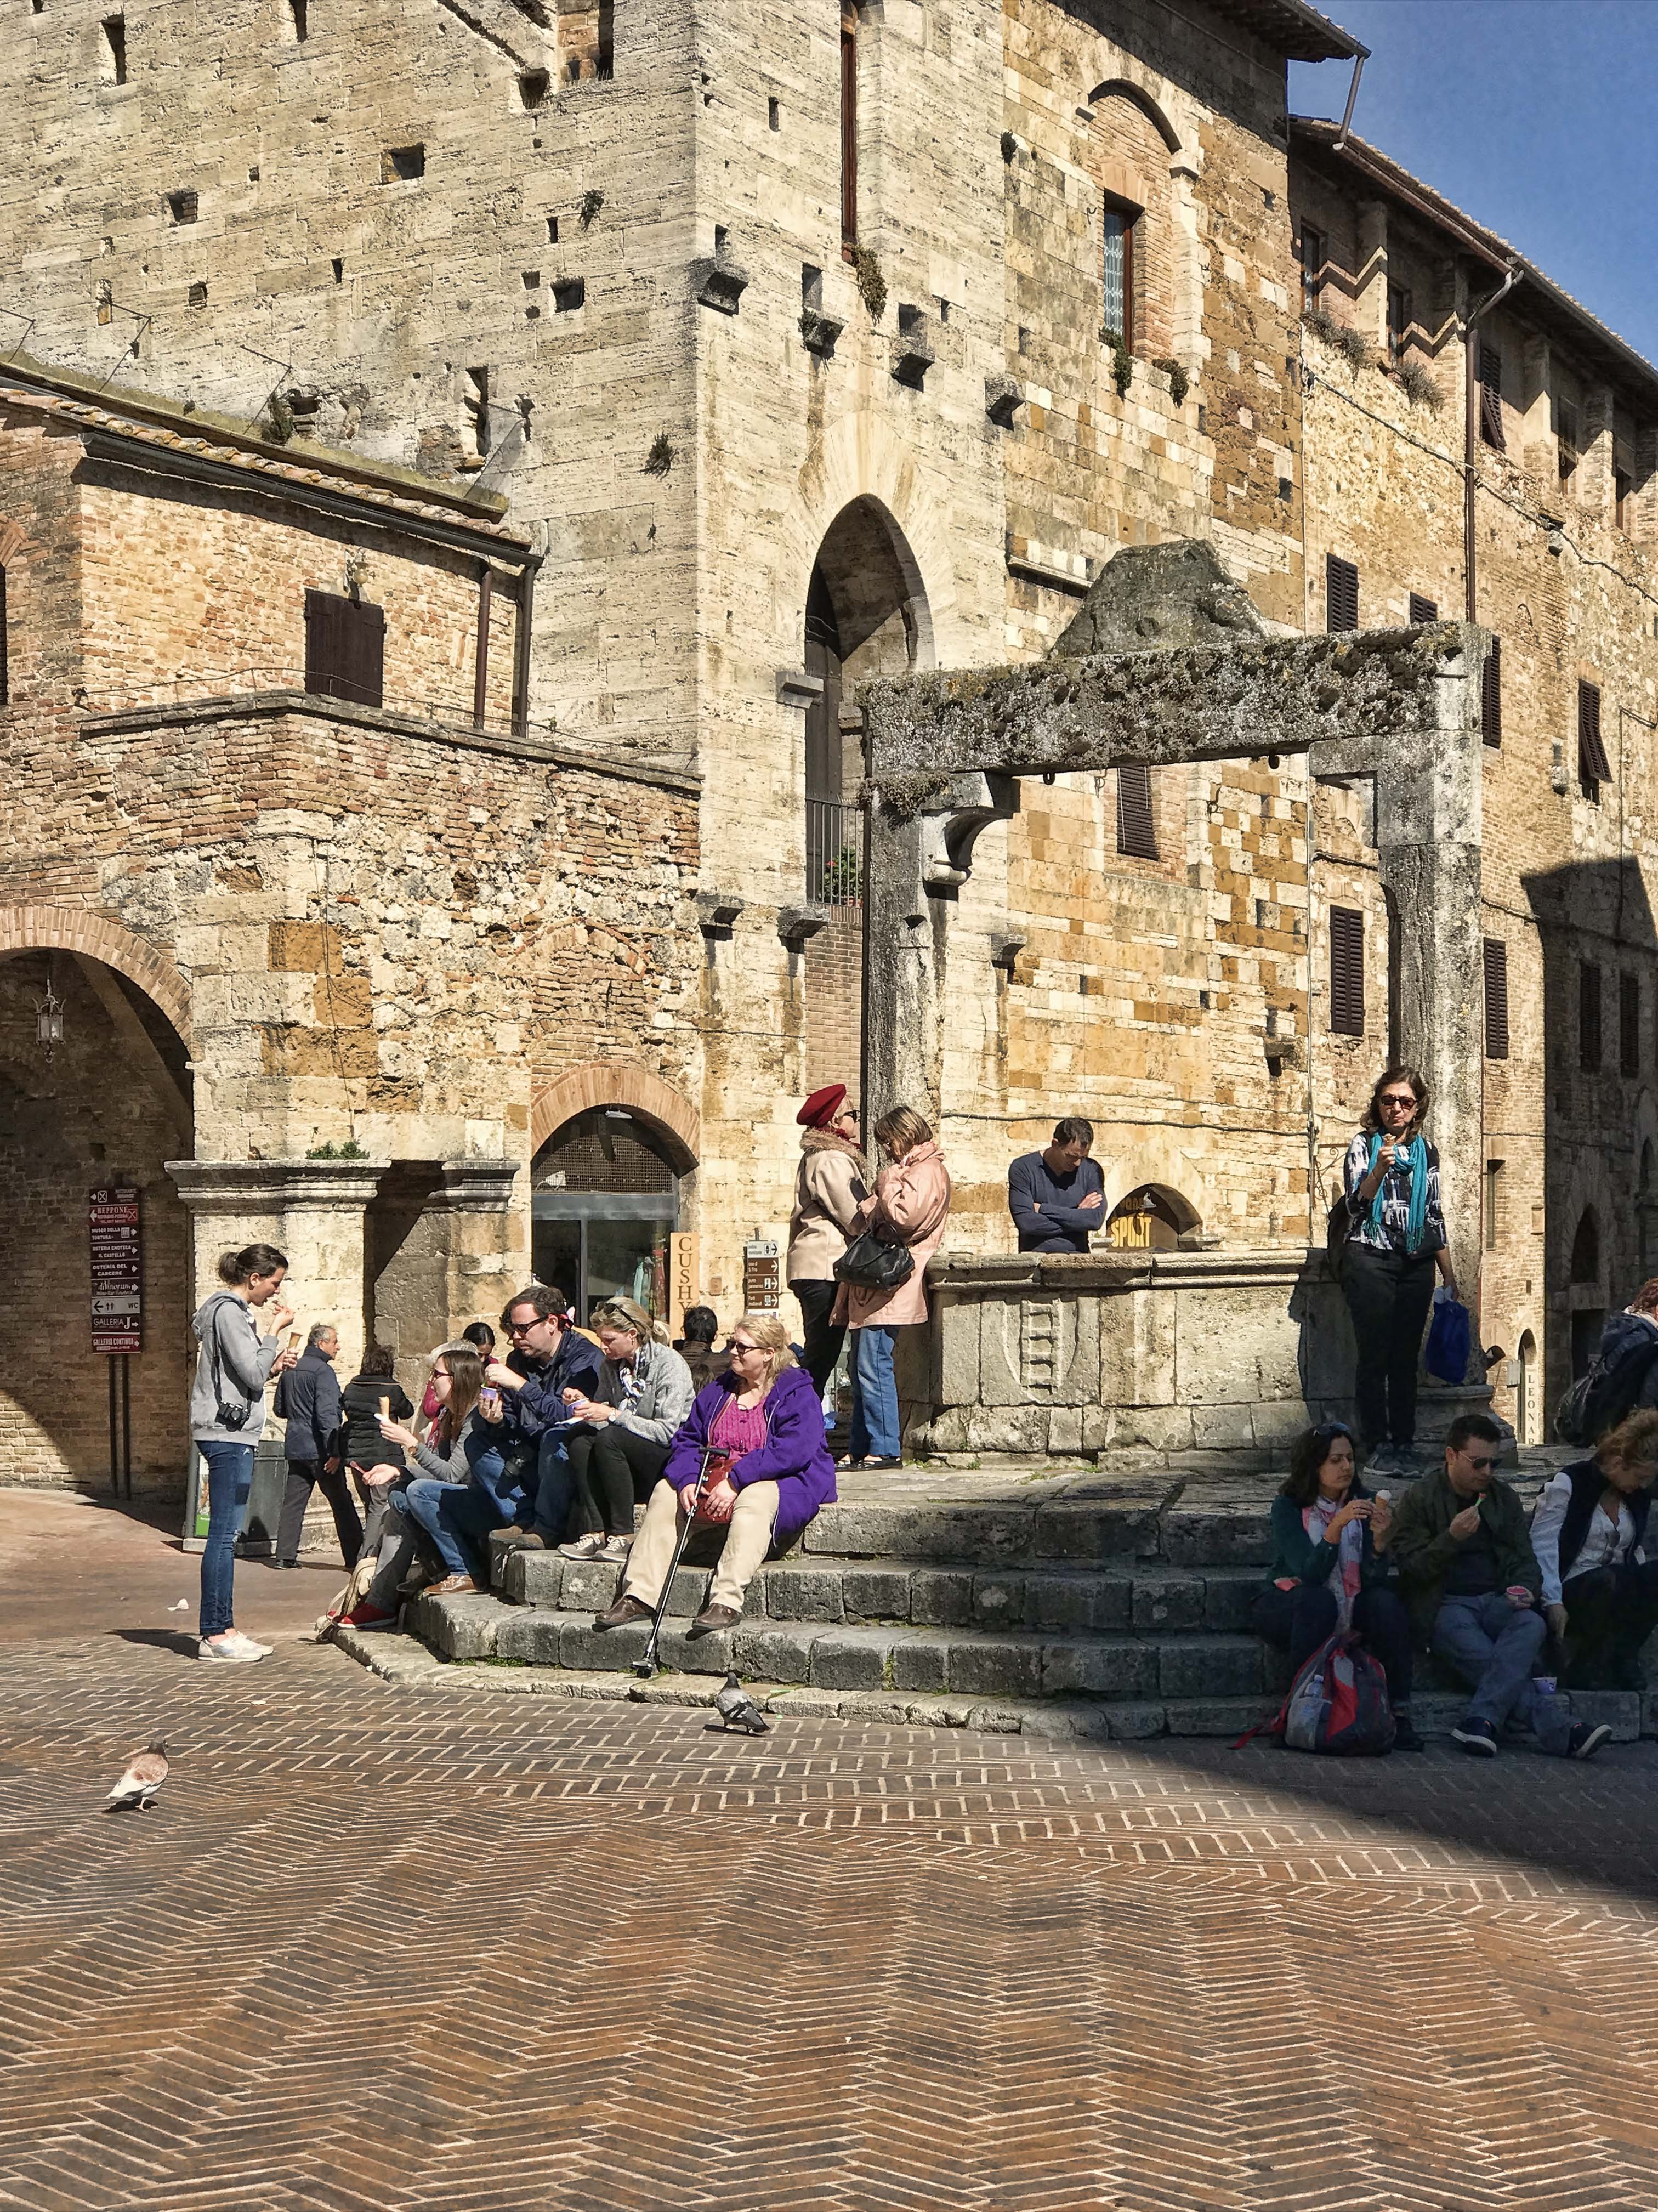 我们在水井广场（Piazza della Cisterna）上的古老水井旁边坐下，同时欣赏美味和古城